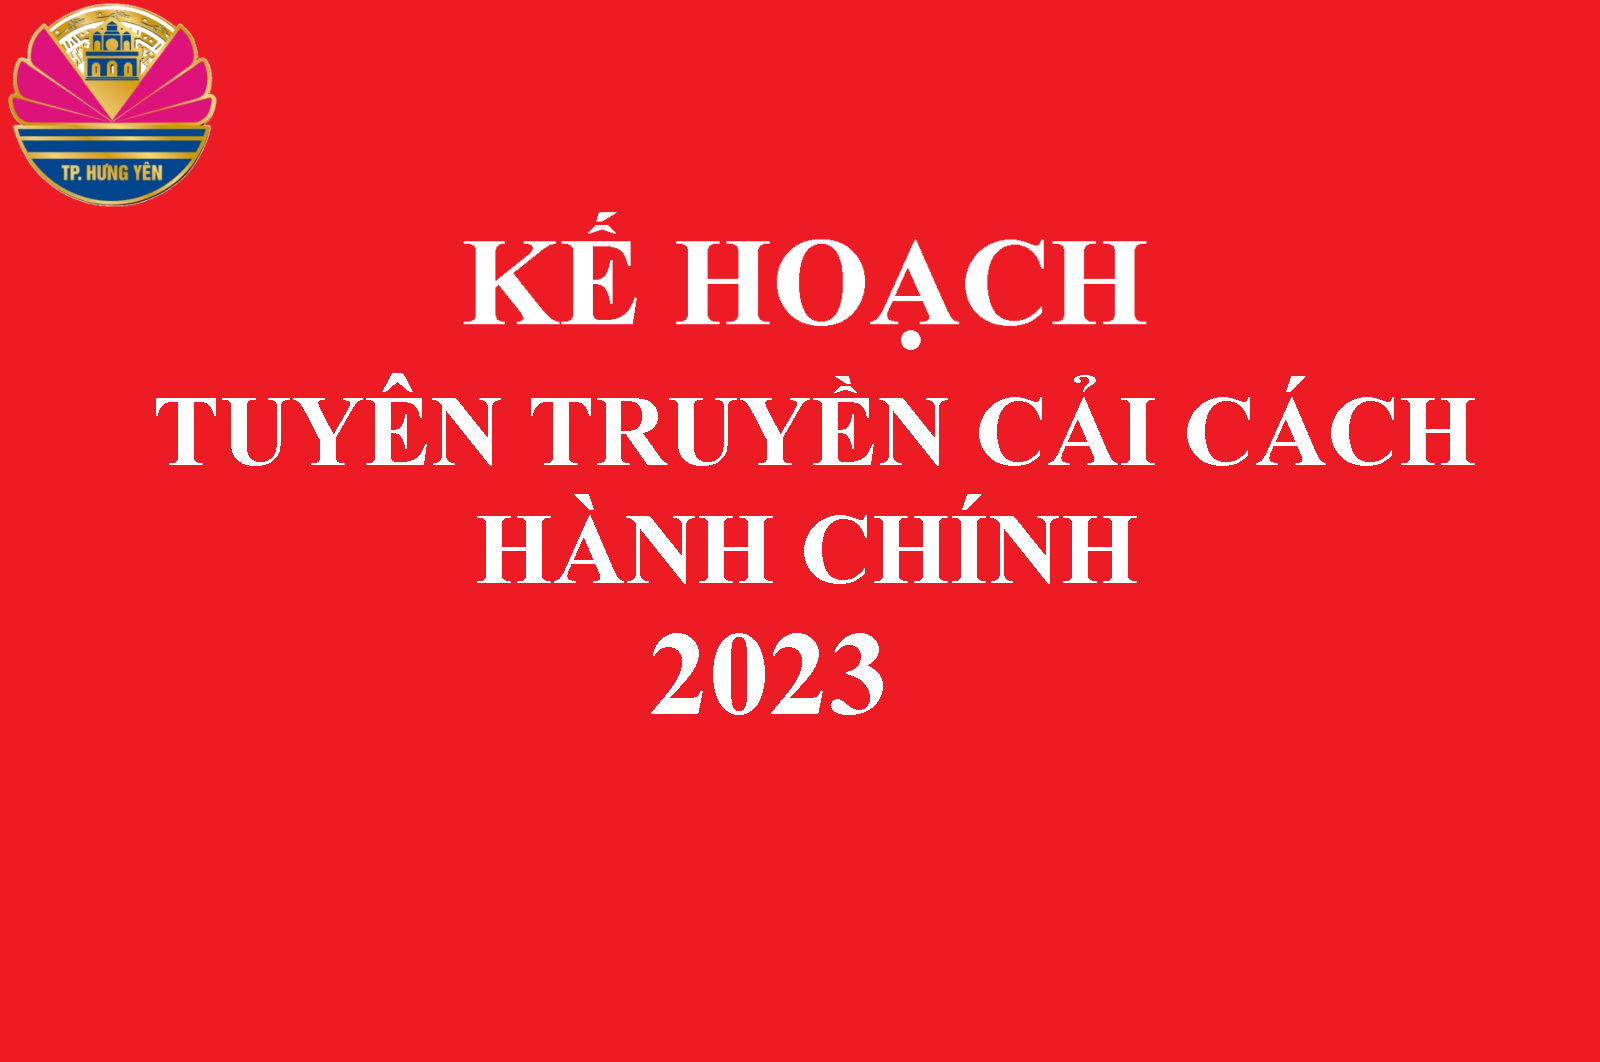 Kế hoạch tuyên truyền cải cách hành chính năm 2023